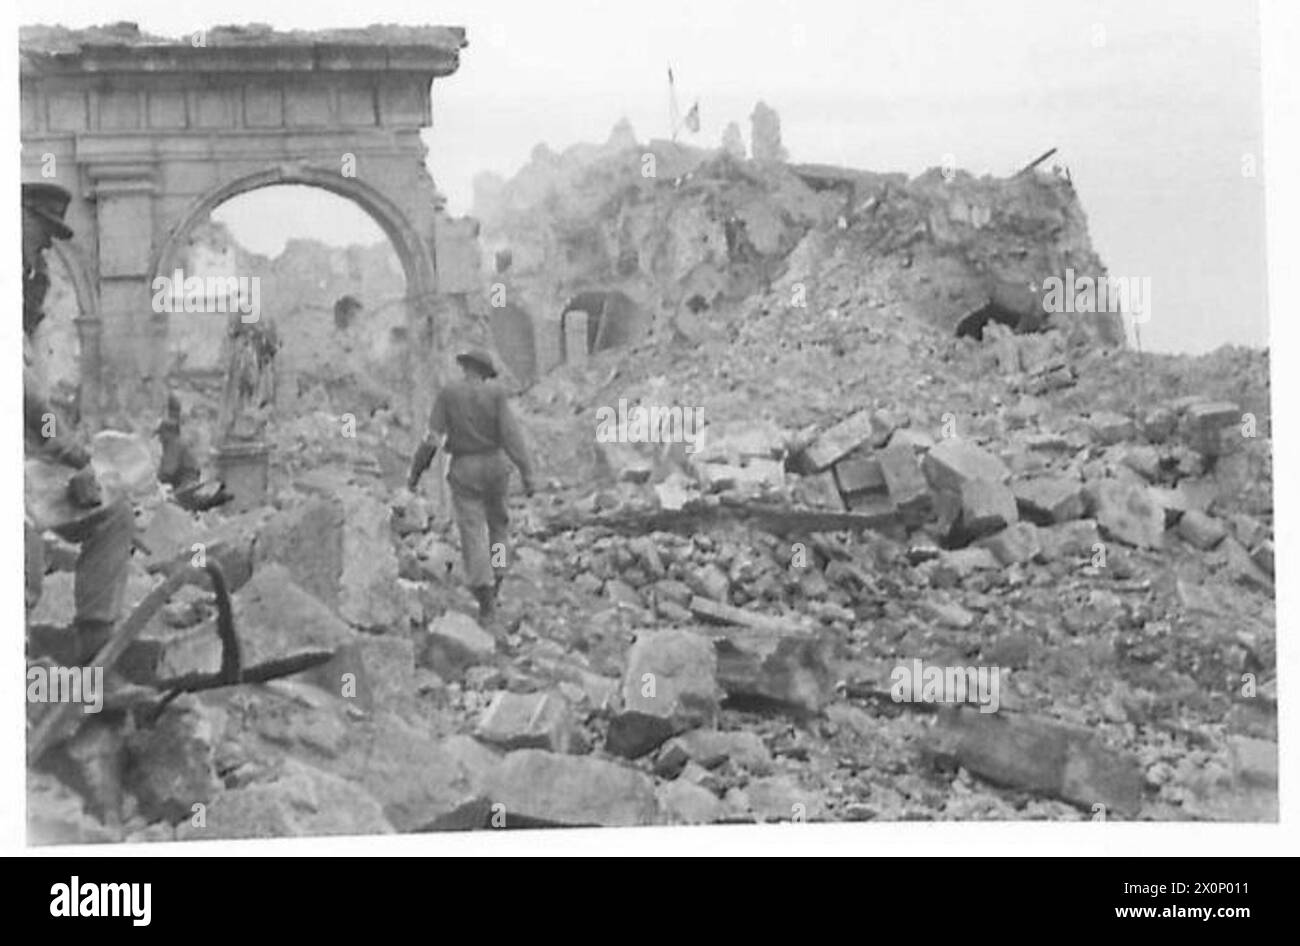 DIE SCHLACHTEN VON MONTE CASSINO, JANUAR-MAI 1944 - Ein Soldat der 2. Brigade, 3. Karpaten-Gewehre-Division (2. Polnisches Korps), der 19. Mai 1944 durch den Ruinenhof der Abtei Monte Cassino geht. Beachten Sie die beschädigte Statue des Heiligen Benedikt, des Gründers der Abtei, auf der linken Seite. Polnische und britische Fahnen, die über den Überresten des Turms gehisst werden, sind im Hintergrund zu sehen britische Armee, polnische Armee, polnische Streitkräfte im Westen, polnische Streitkräfte im Westen, polnische Streitkräfte im Westen, polnische Streitkräfte im Westen, Karpaten-Gewehre Divisior, 3, polnische Streitkräfte im Westen, 2. Korps, 3. Karpaten-Gewehre-Division, 2 Stockfoto